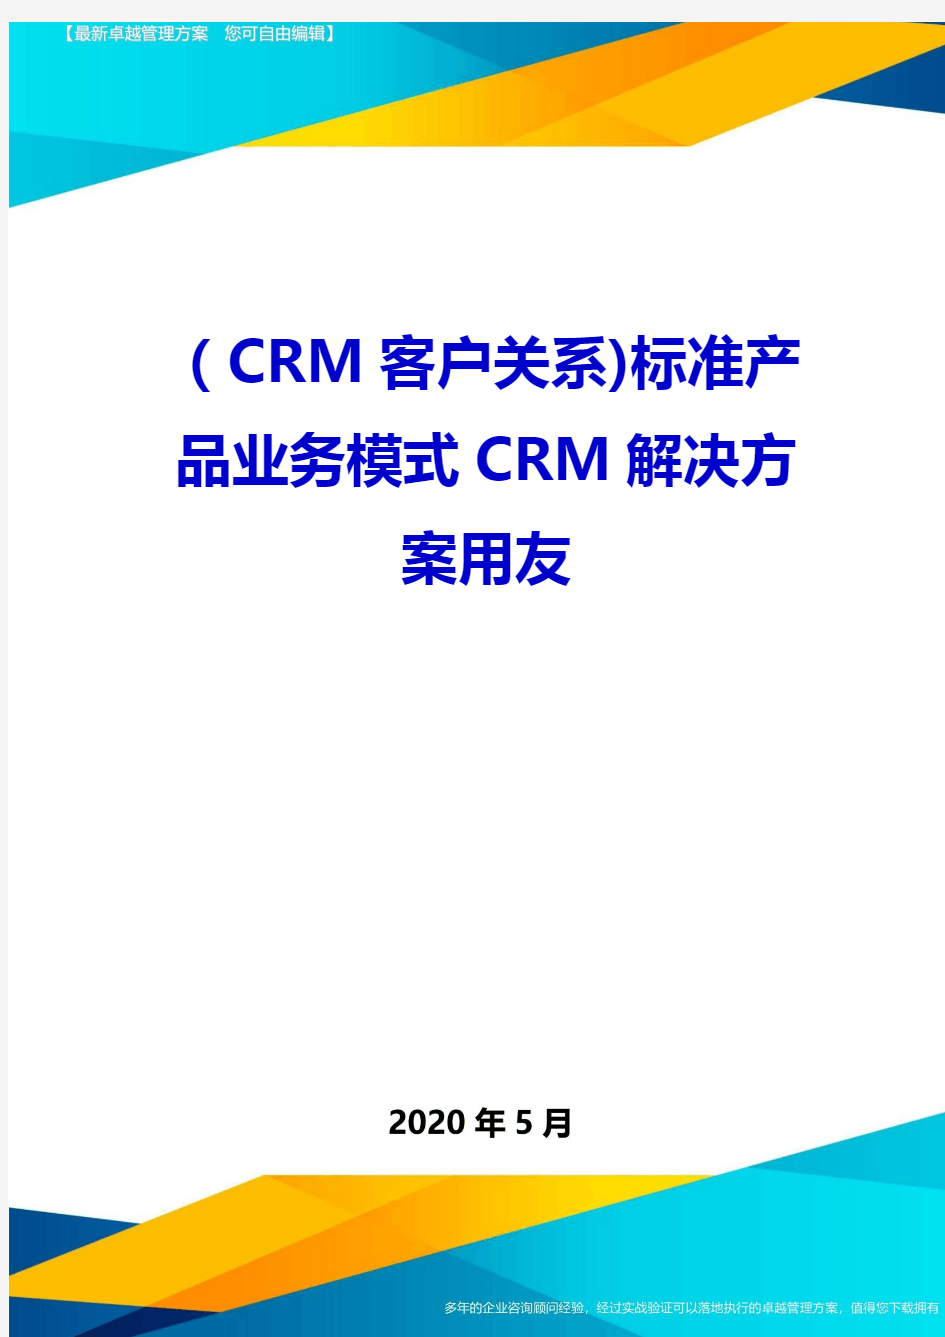 (CRM客户关系)标准产品业务模式CRM解决方案用友